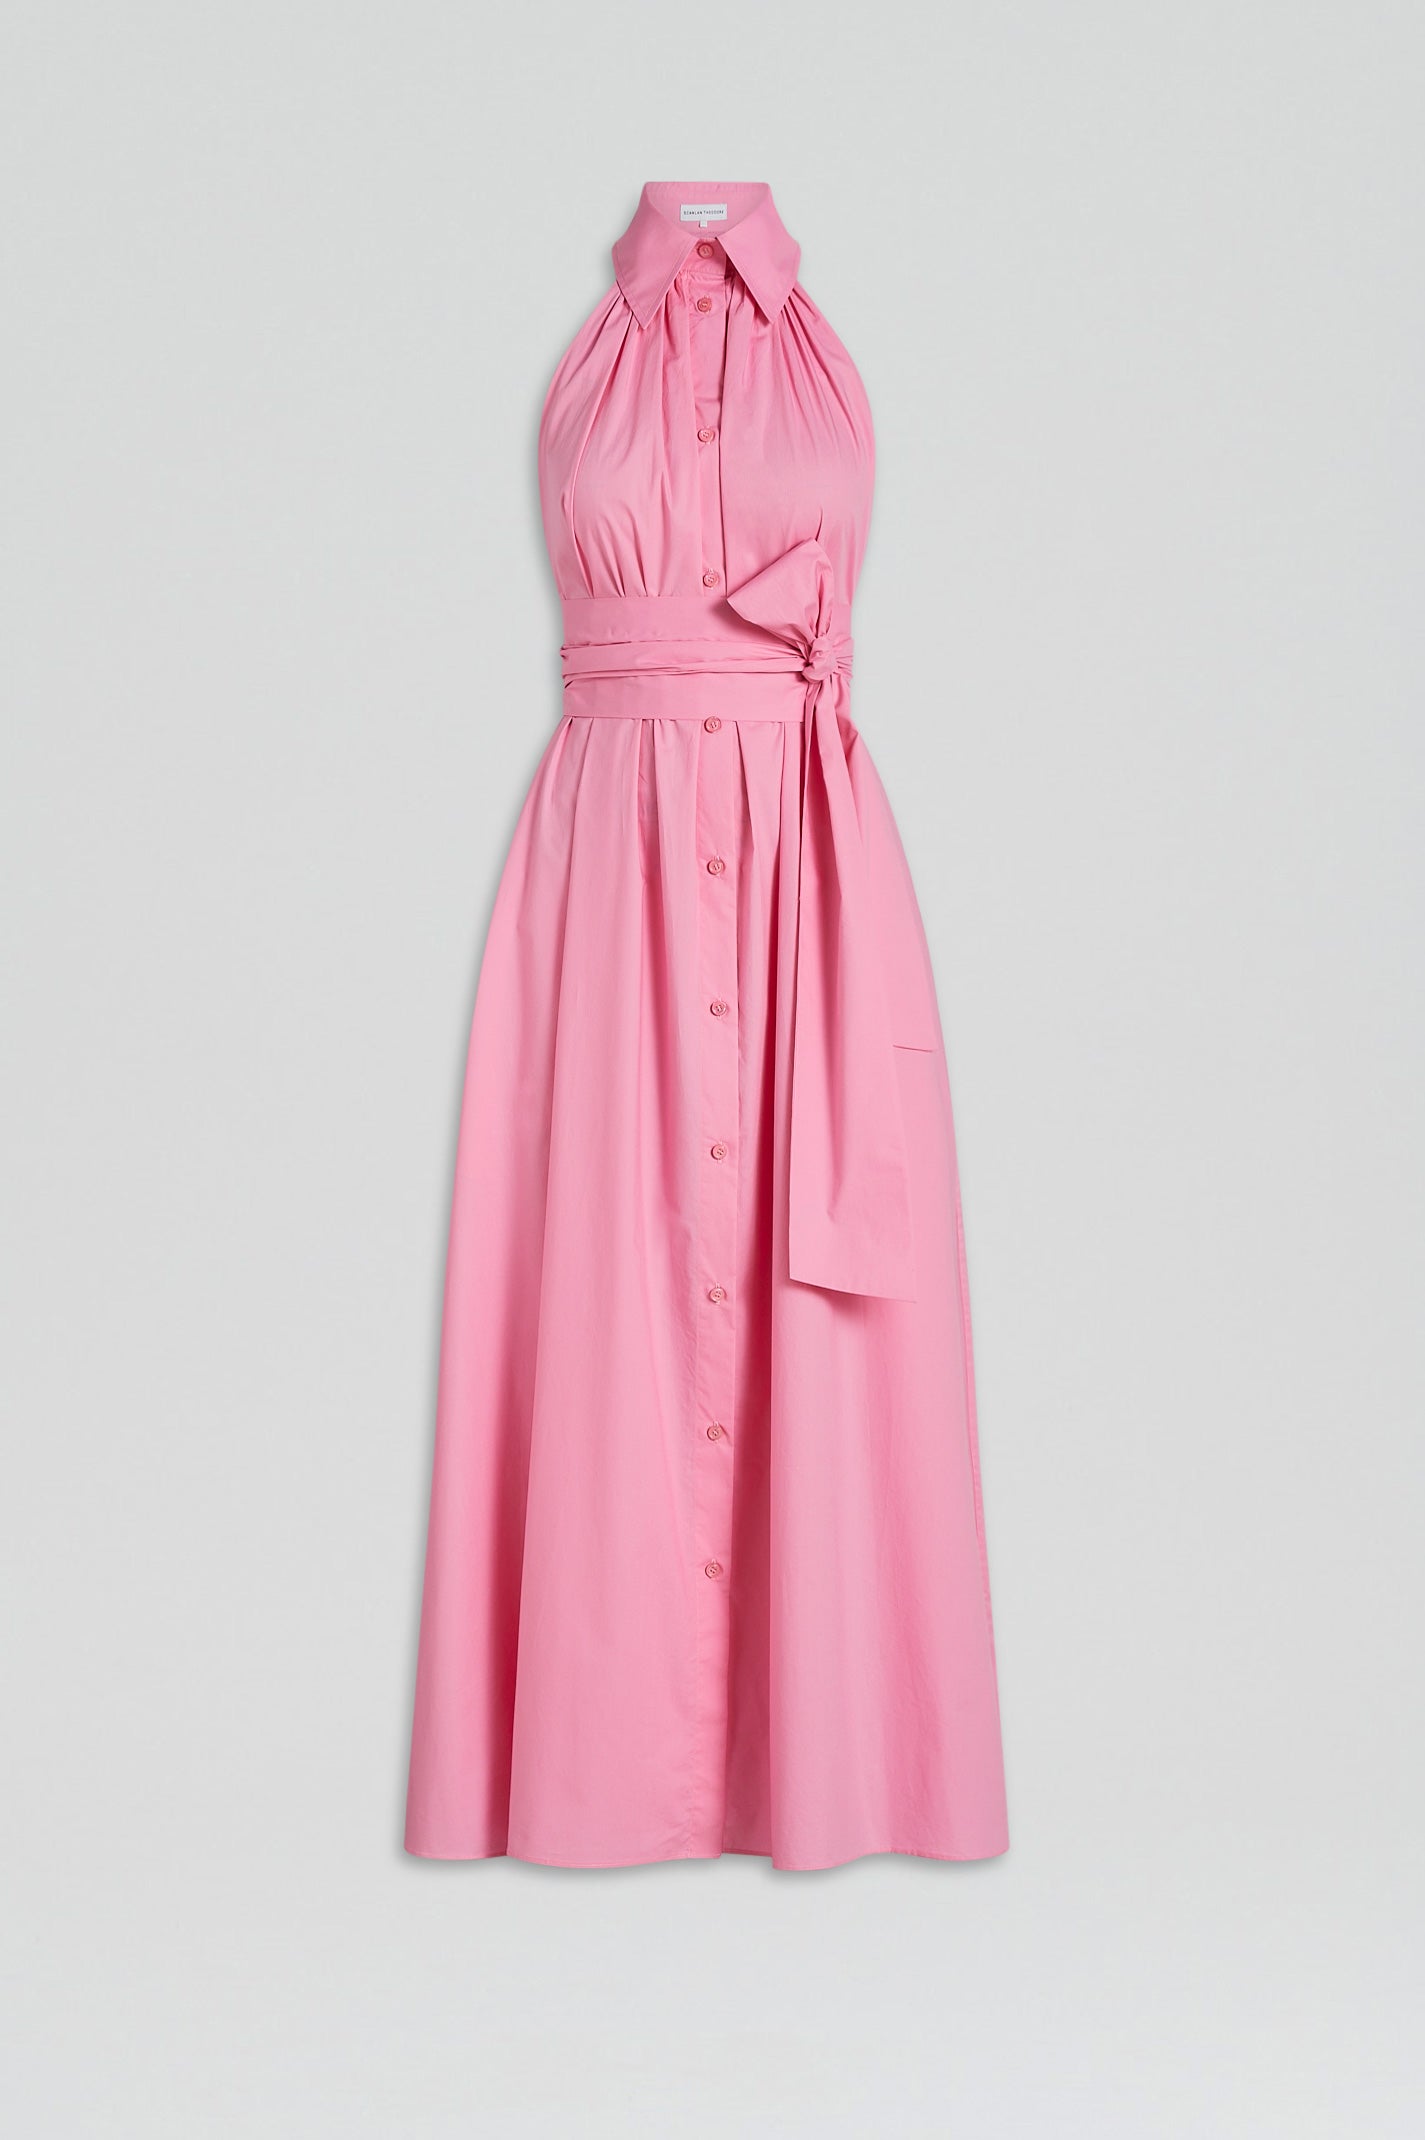 Parachute sleeveless shirt dress – pink